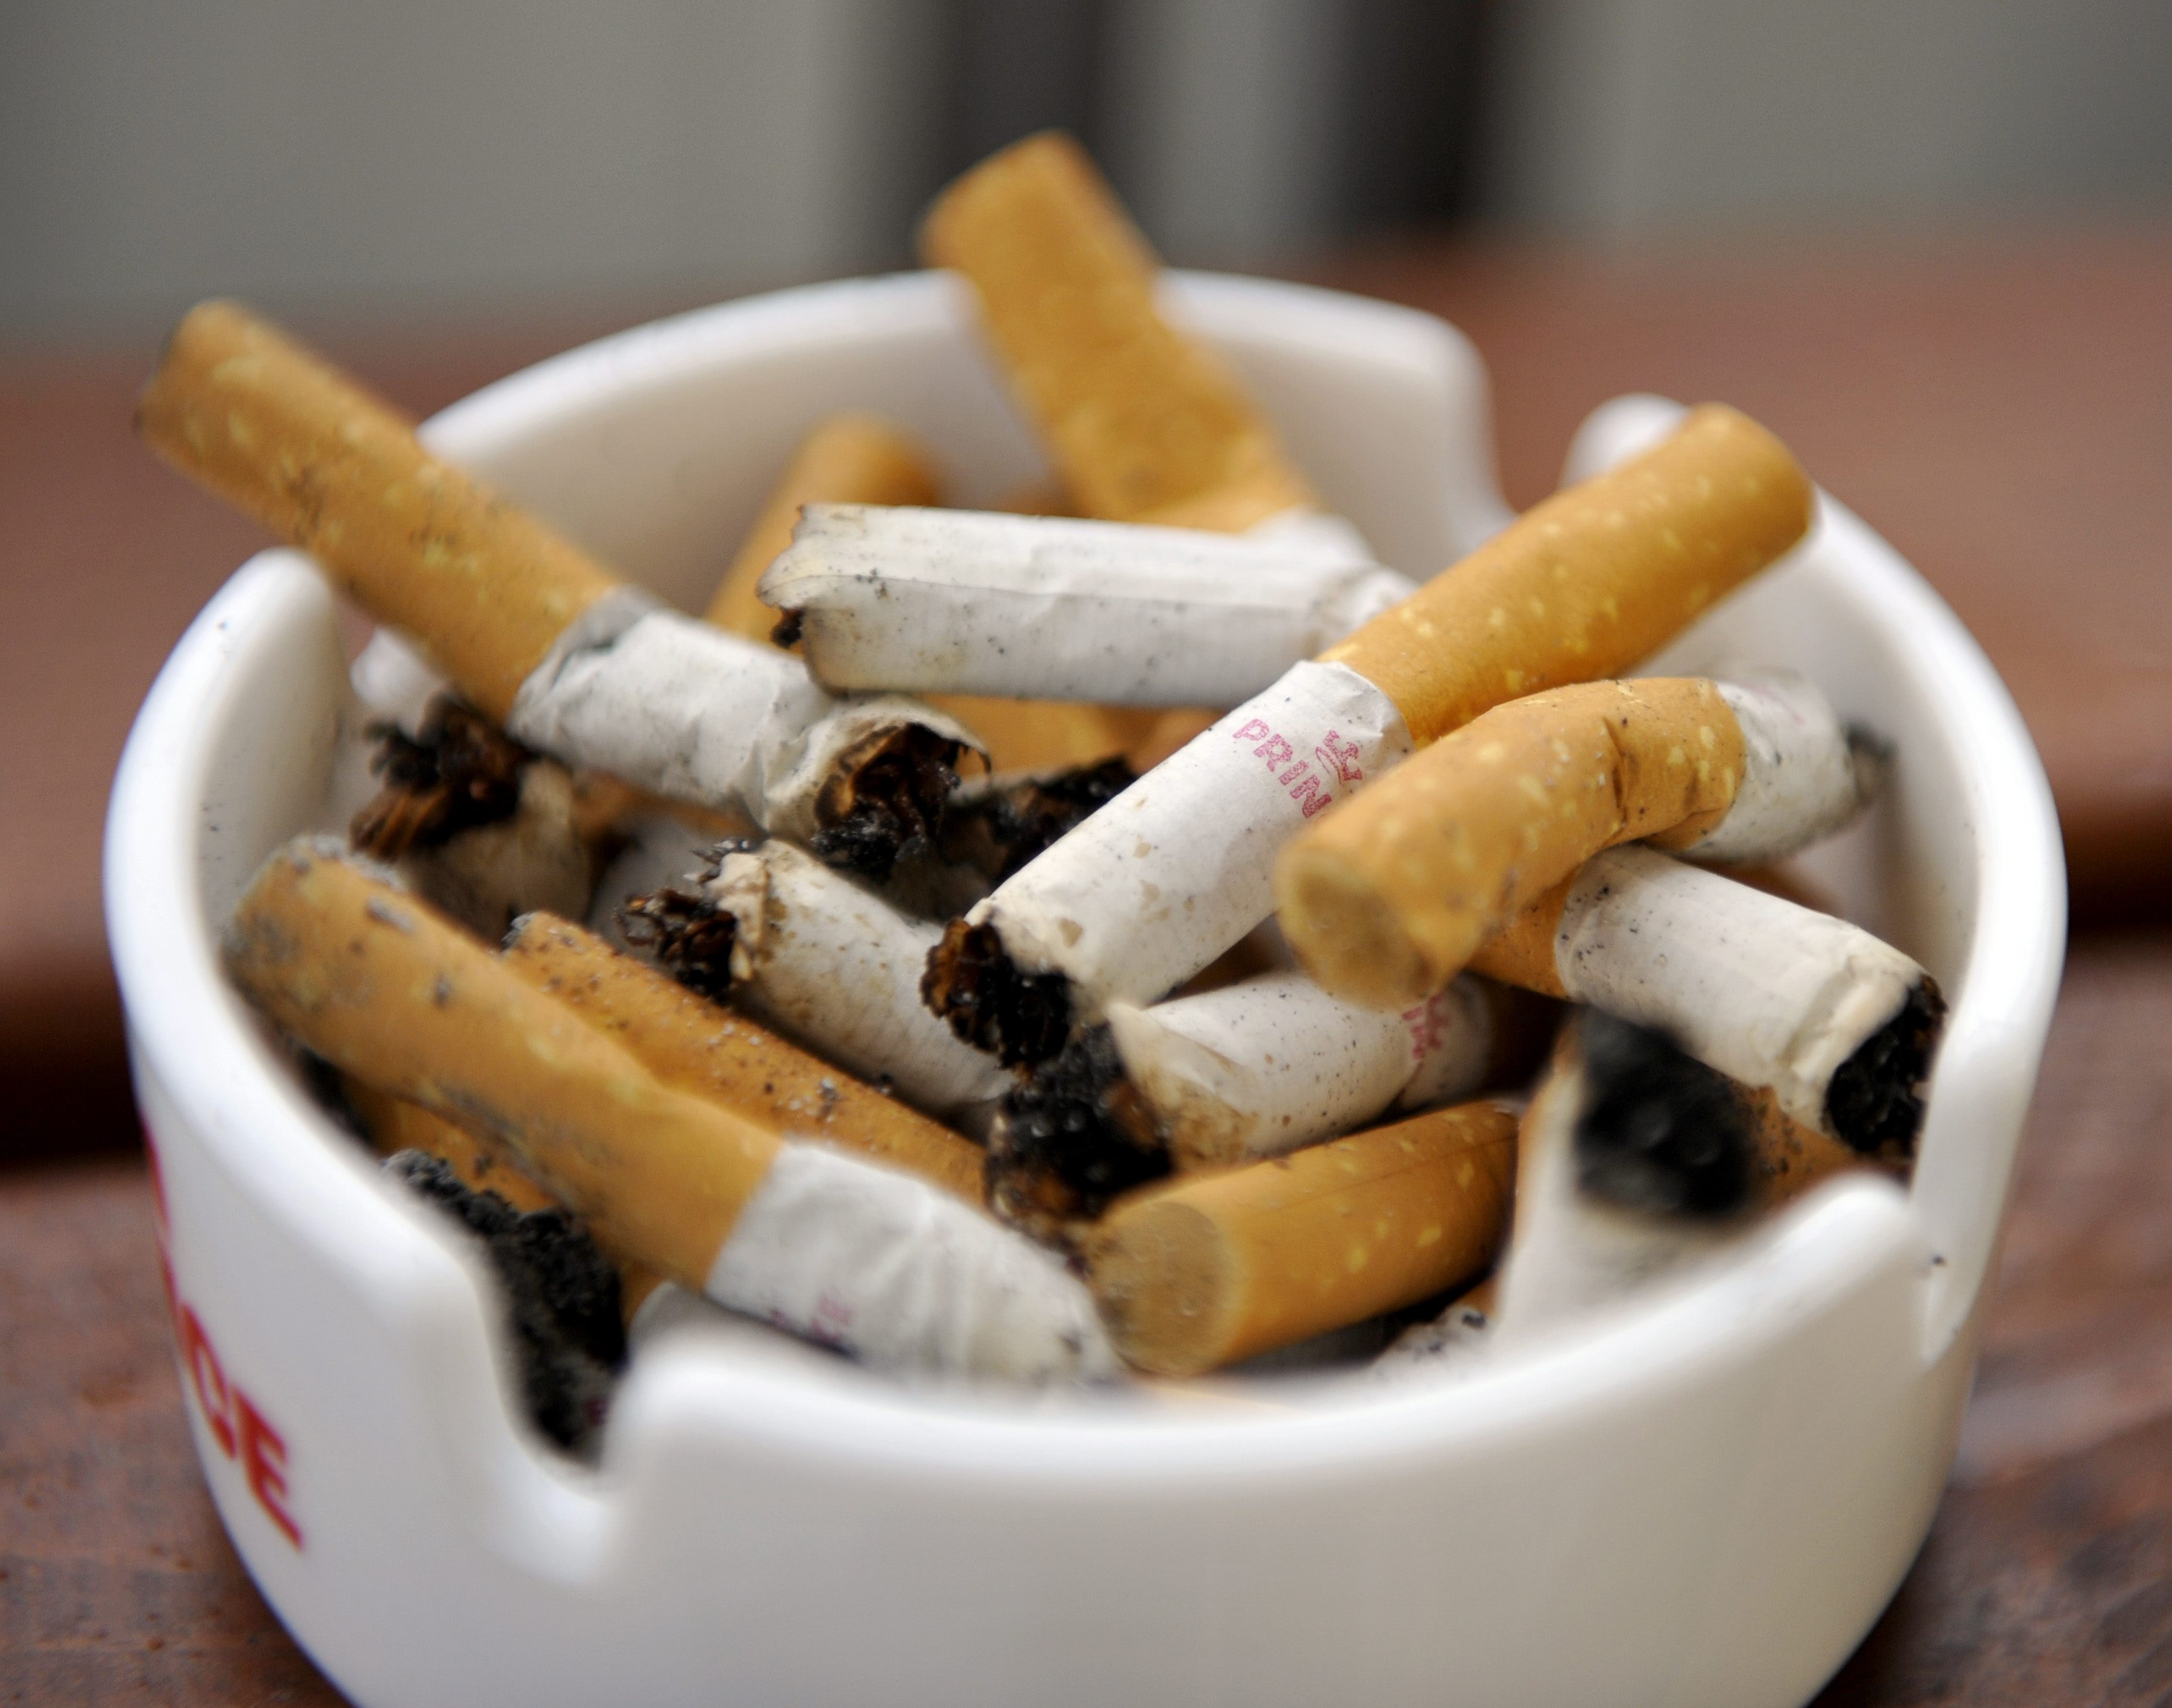 Forskarna tror att den genomsnittliga rökaren förkortar livet med ungefär 4 år. Motsvarande siffra för regelbundna tevetittare är 4,8 år.